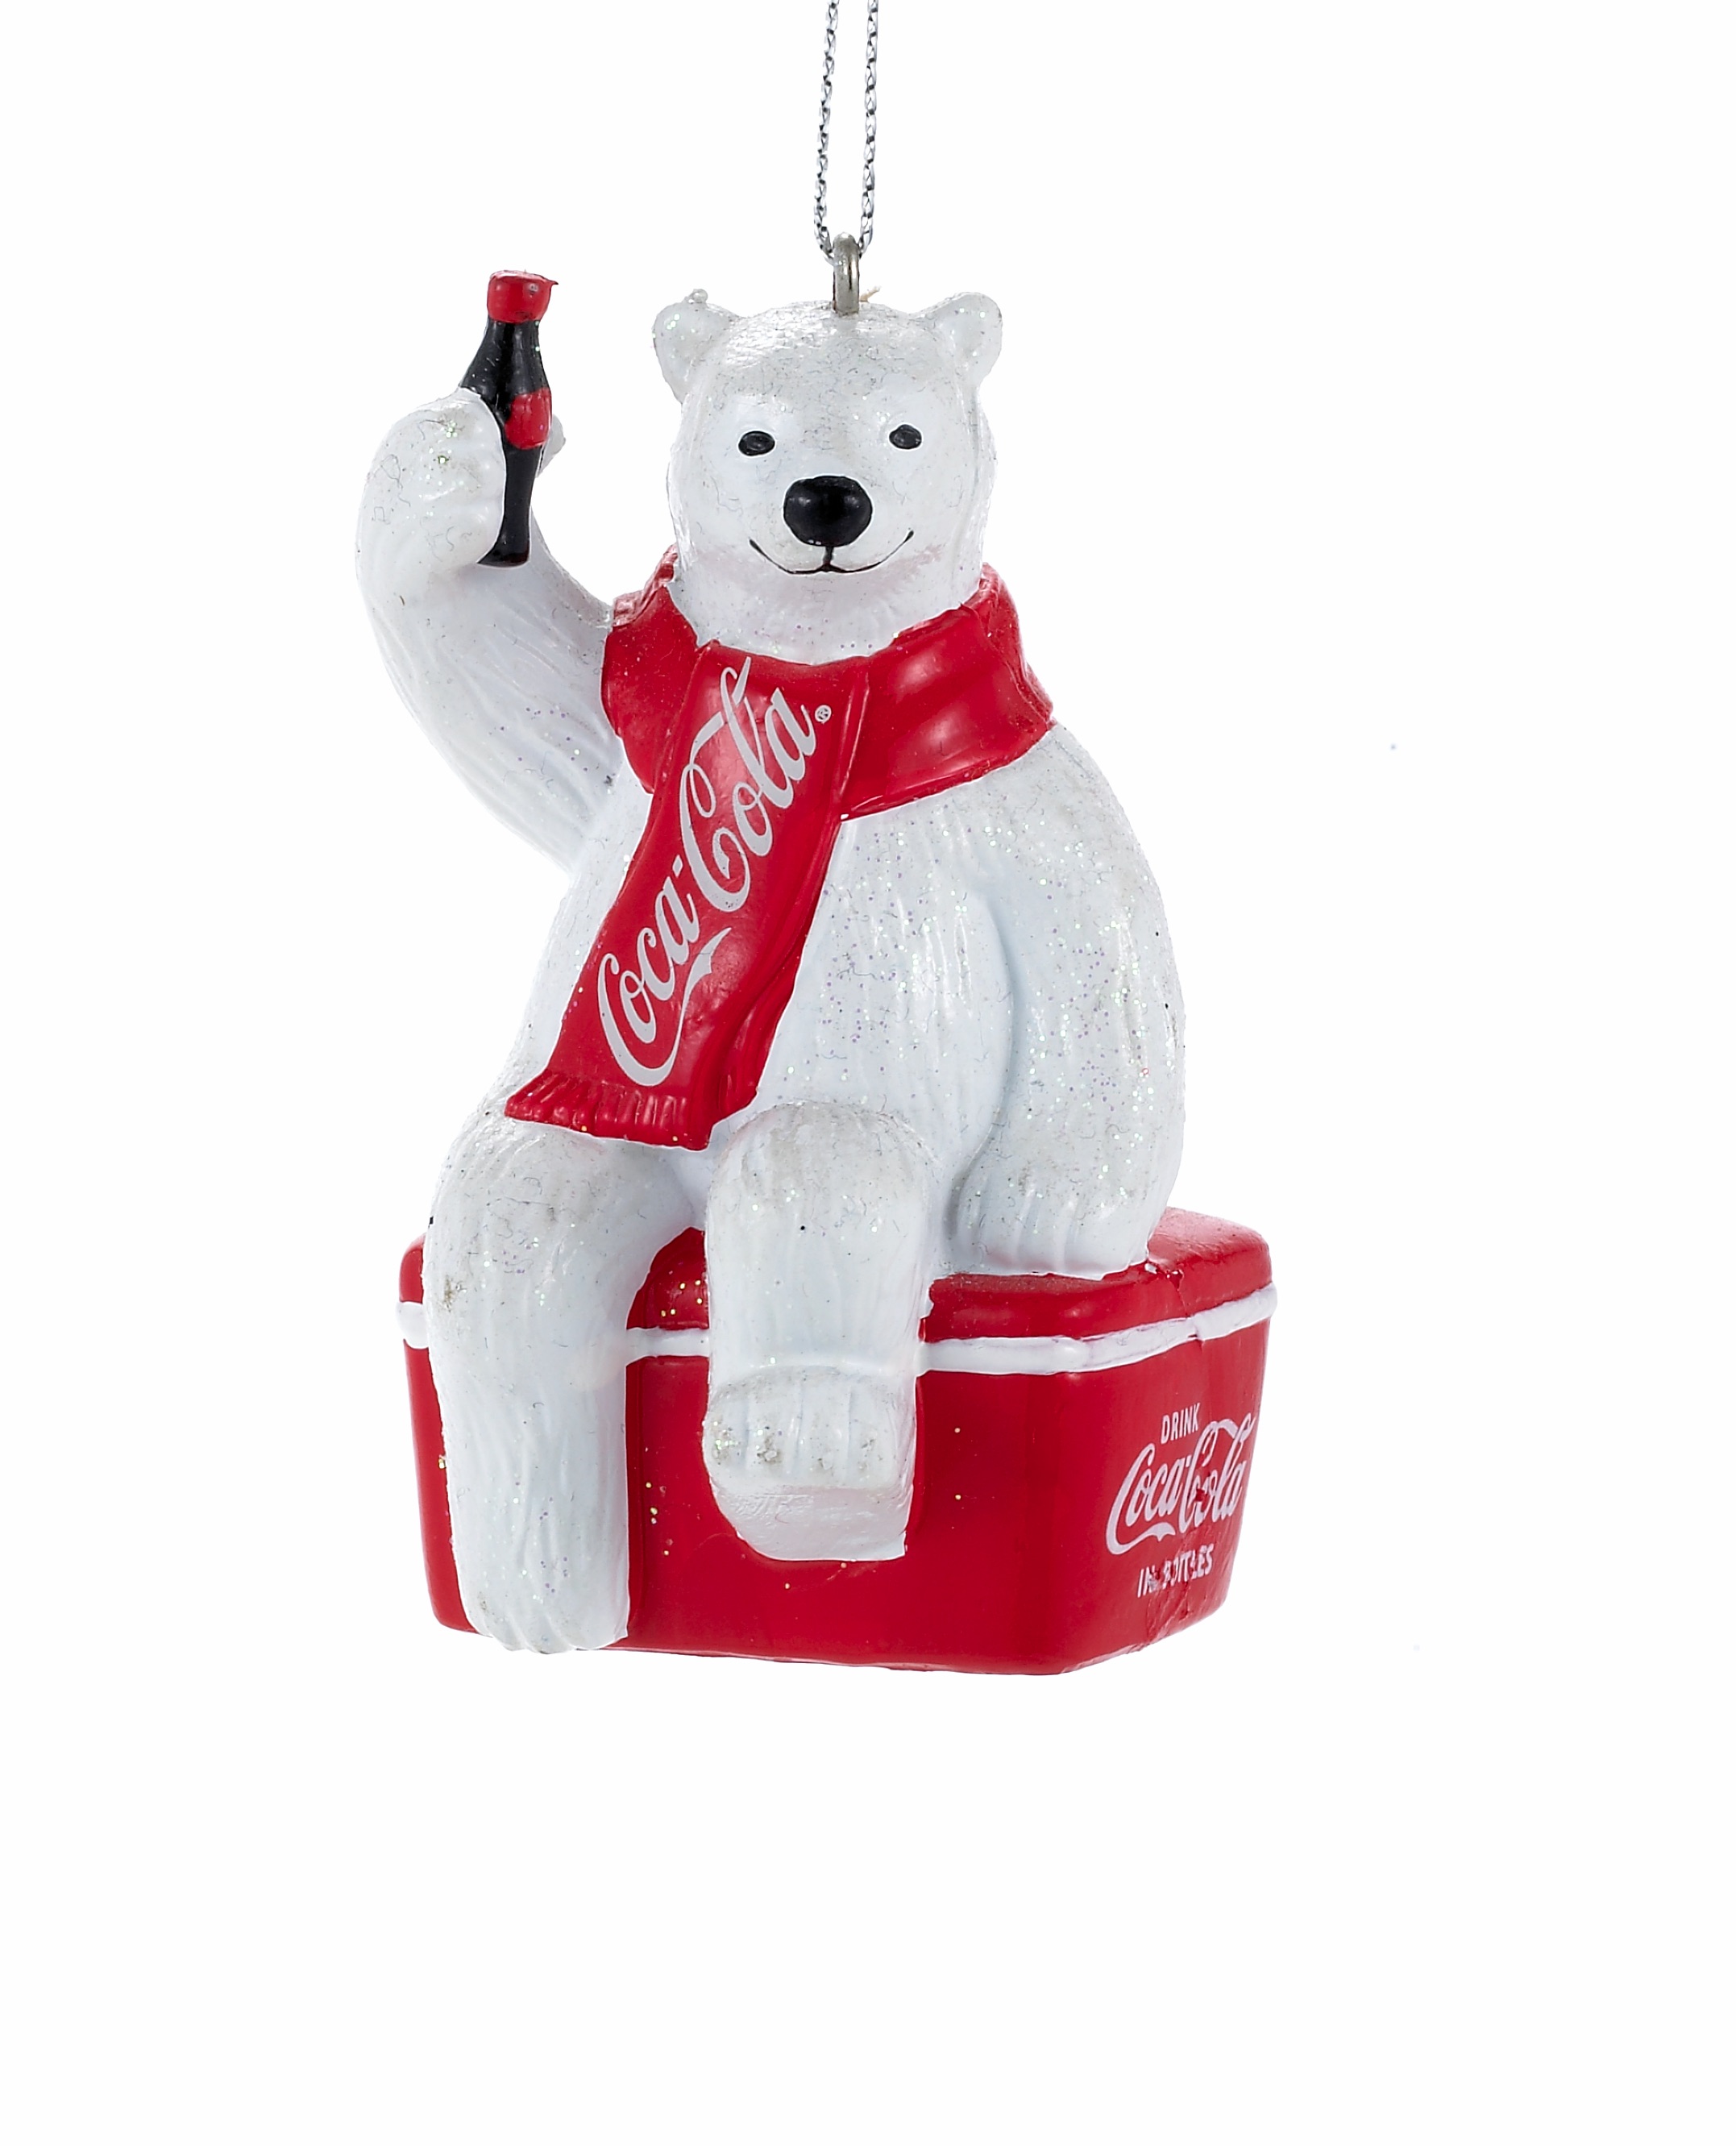 Coca-Cola Polar Bear On Cooler 3.5 Inch